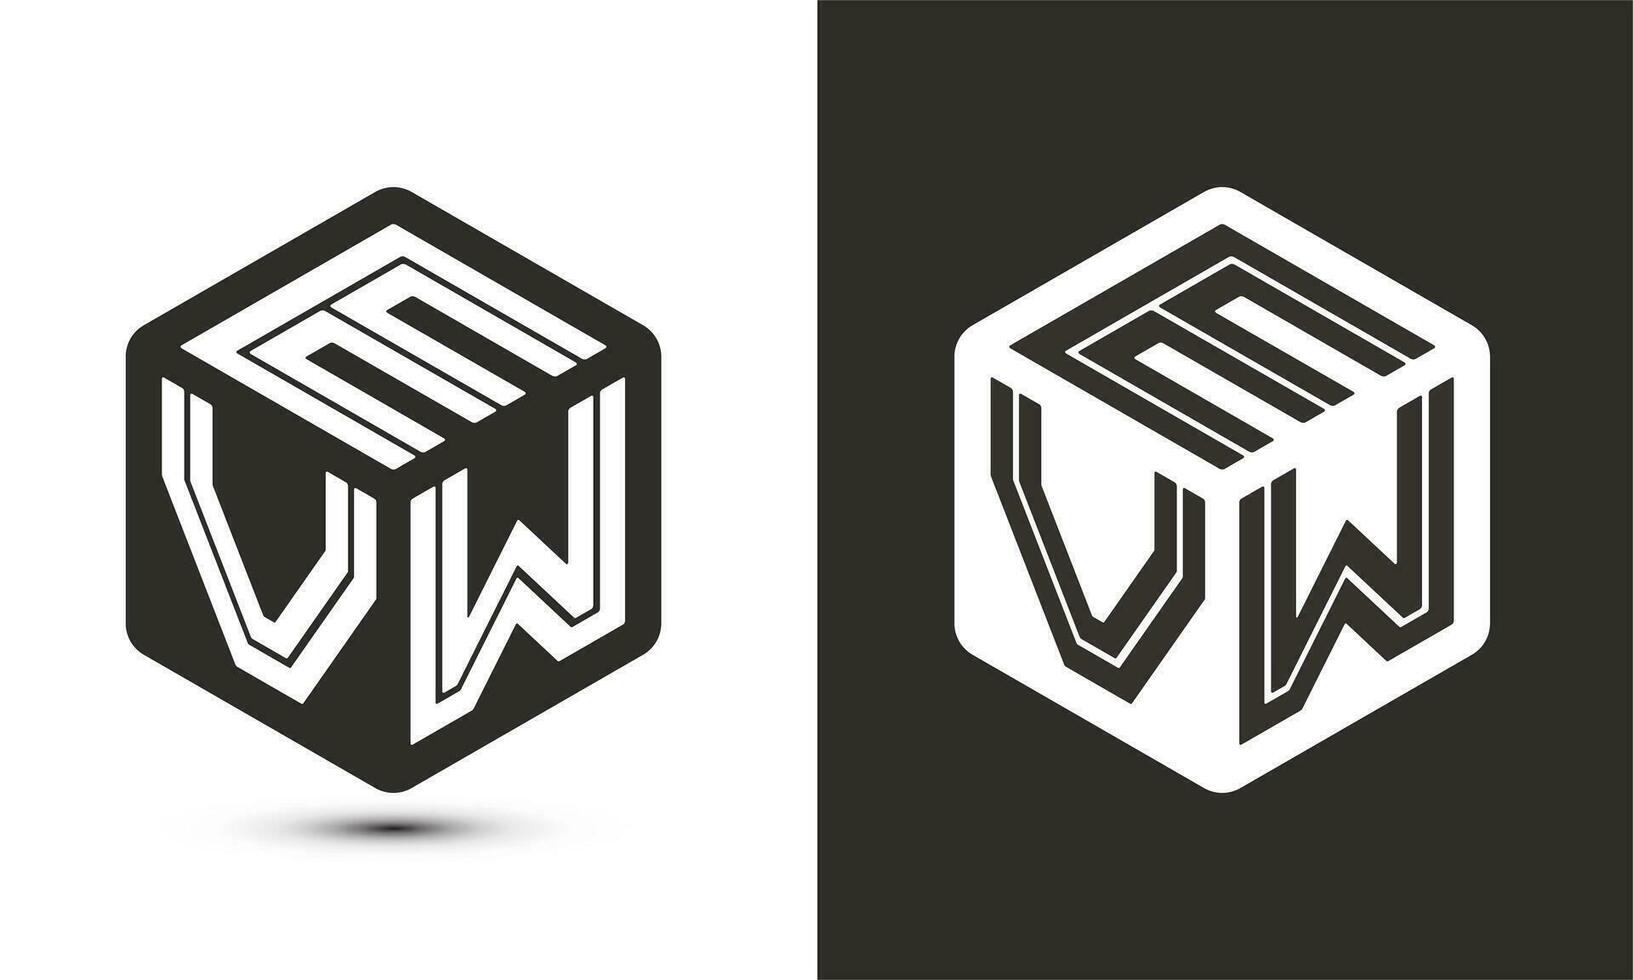 evw brief logo ontwerp met illustrator kubus logo, vector logo modern alfabet doopvont overlappen stijl.